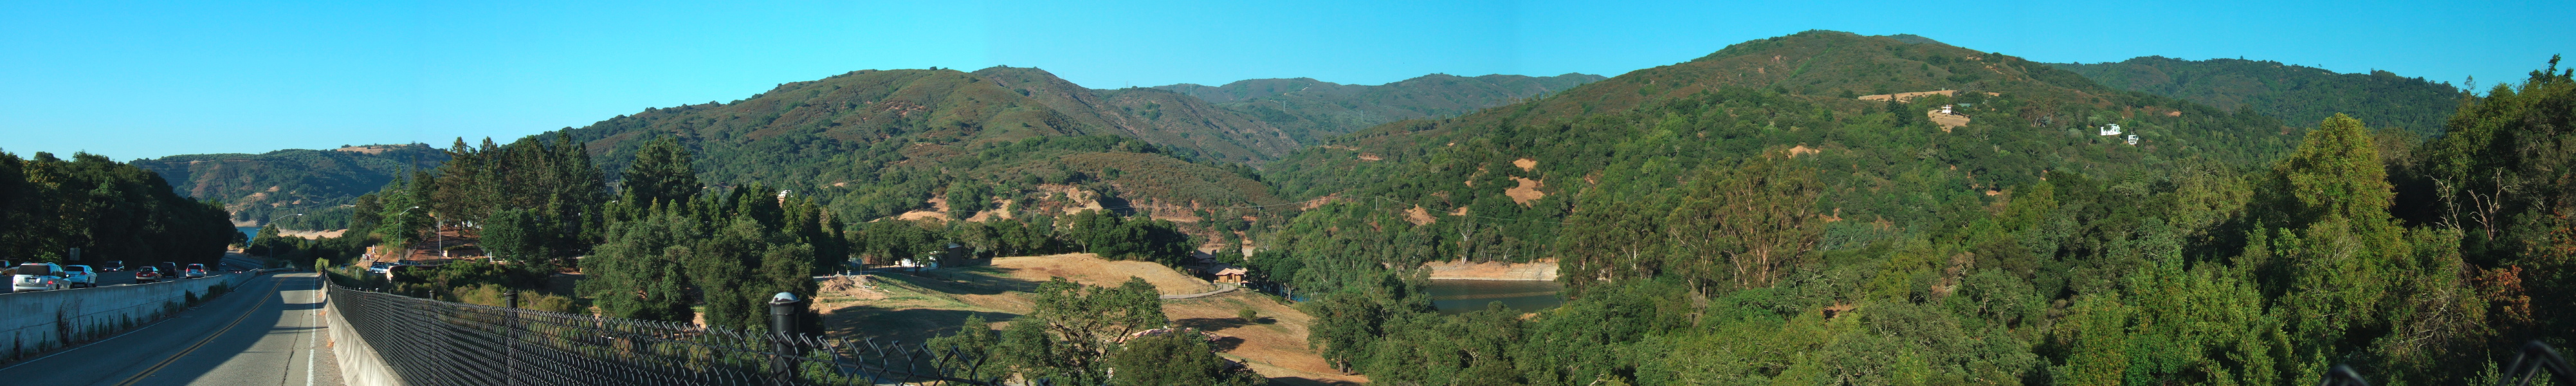 Panorama of the Sierra Azul from Old Santa Cruz Highway